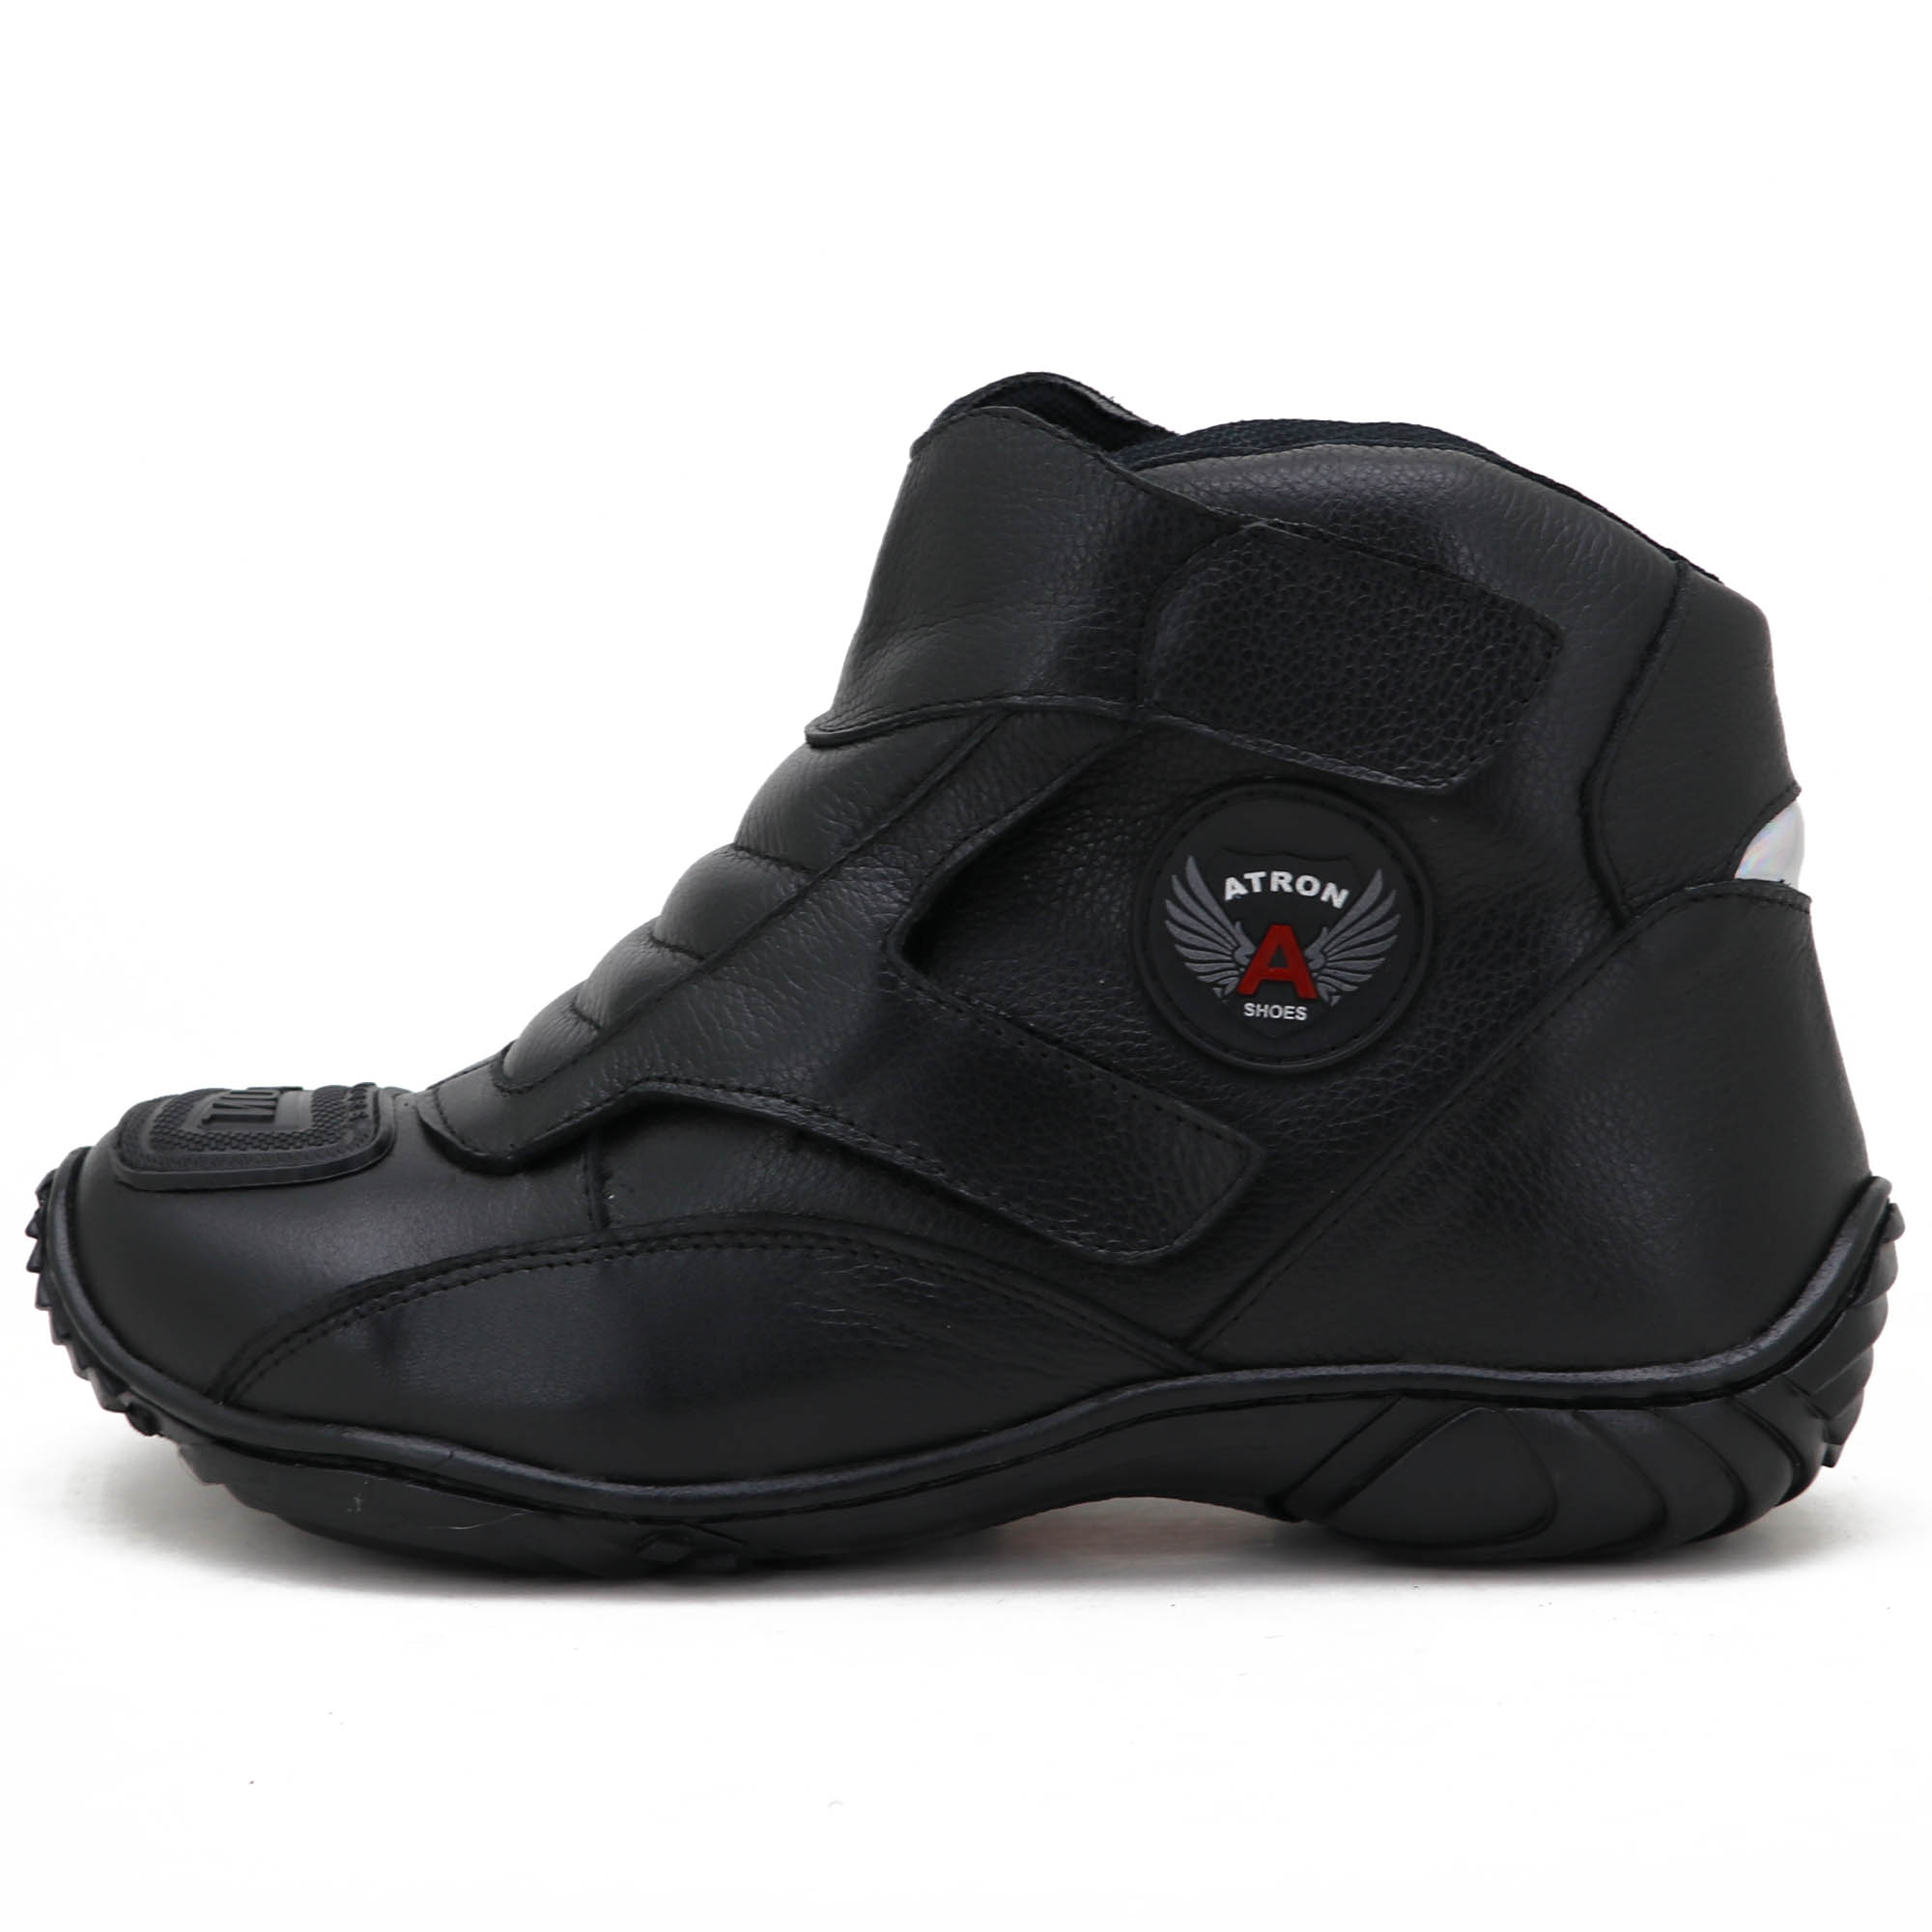 Tênis bota motociclista couro preto unissex 270 com chinela estampada Atron Shoes